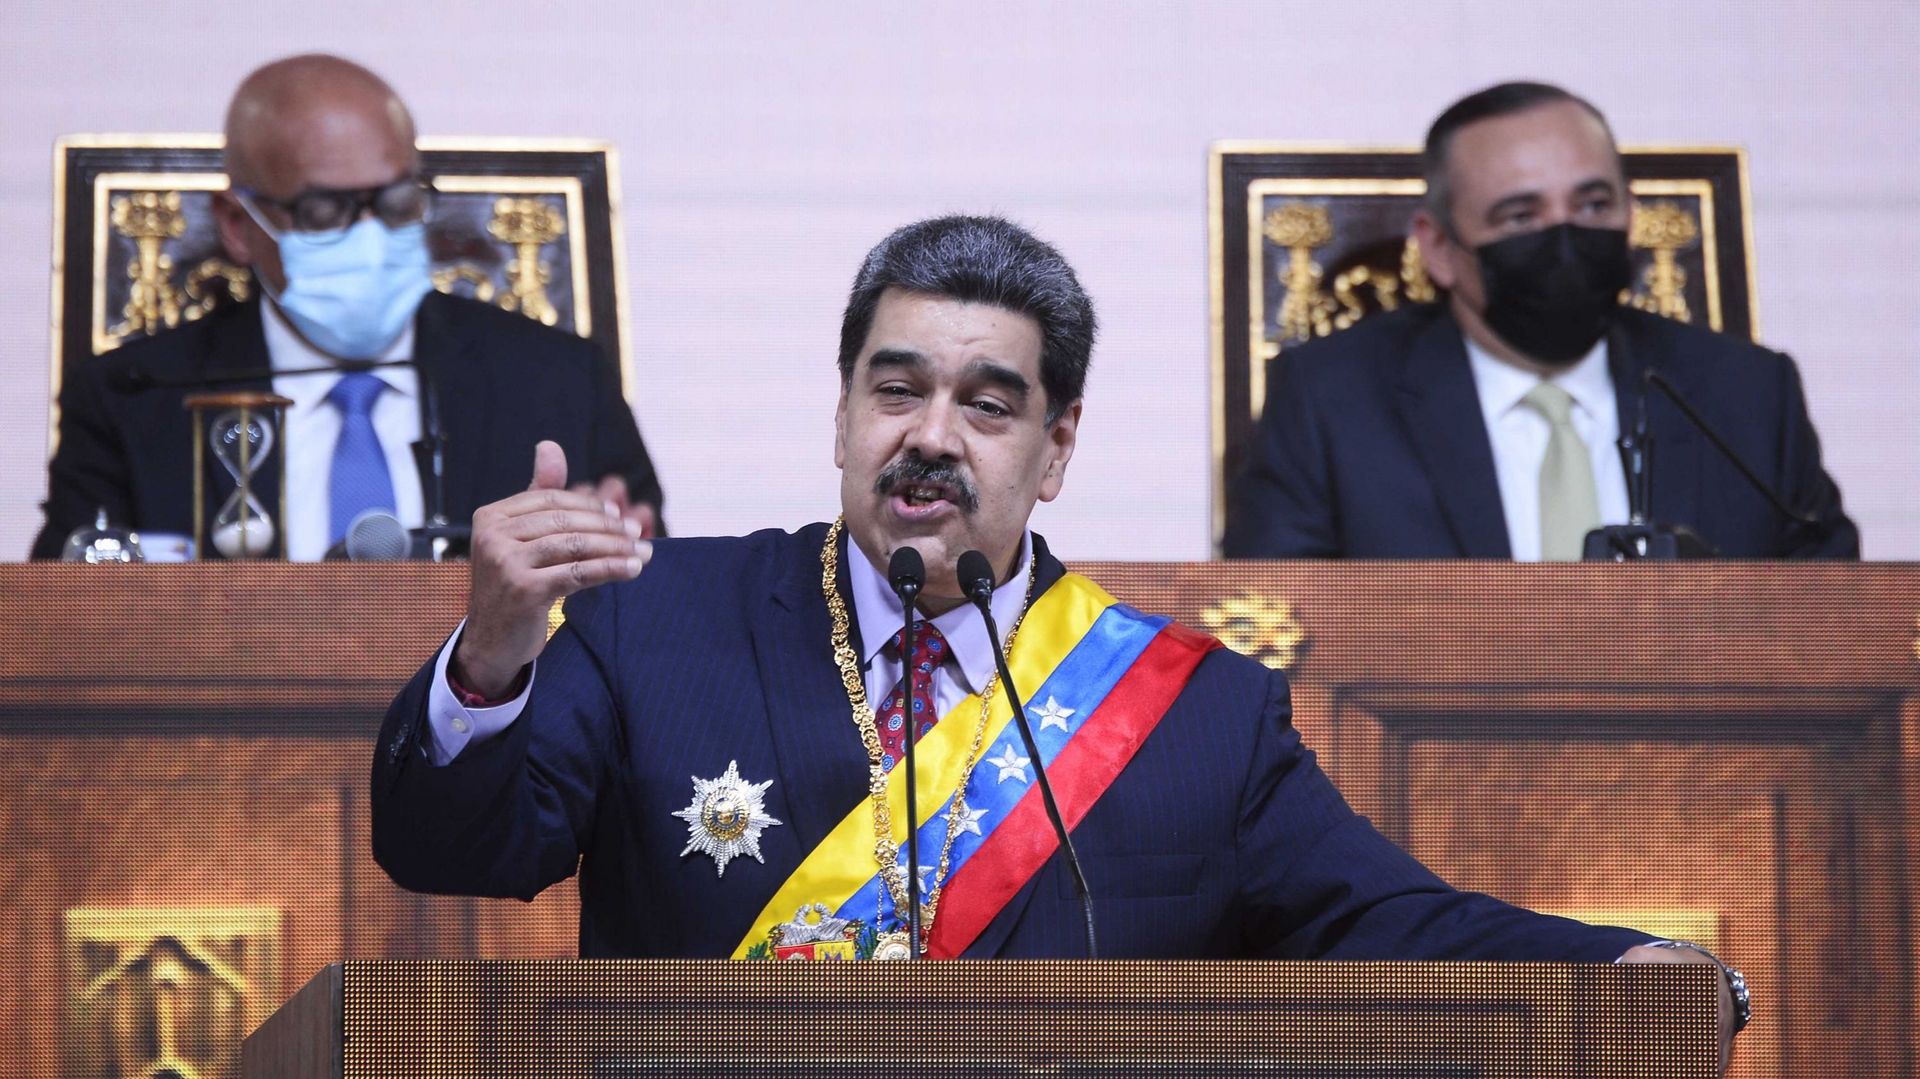 Venezuela : 12 heures pour recueillir 4,2 millions de signatures contre Maduro